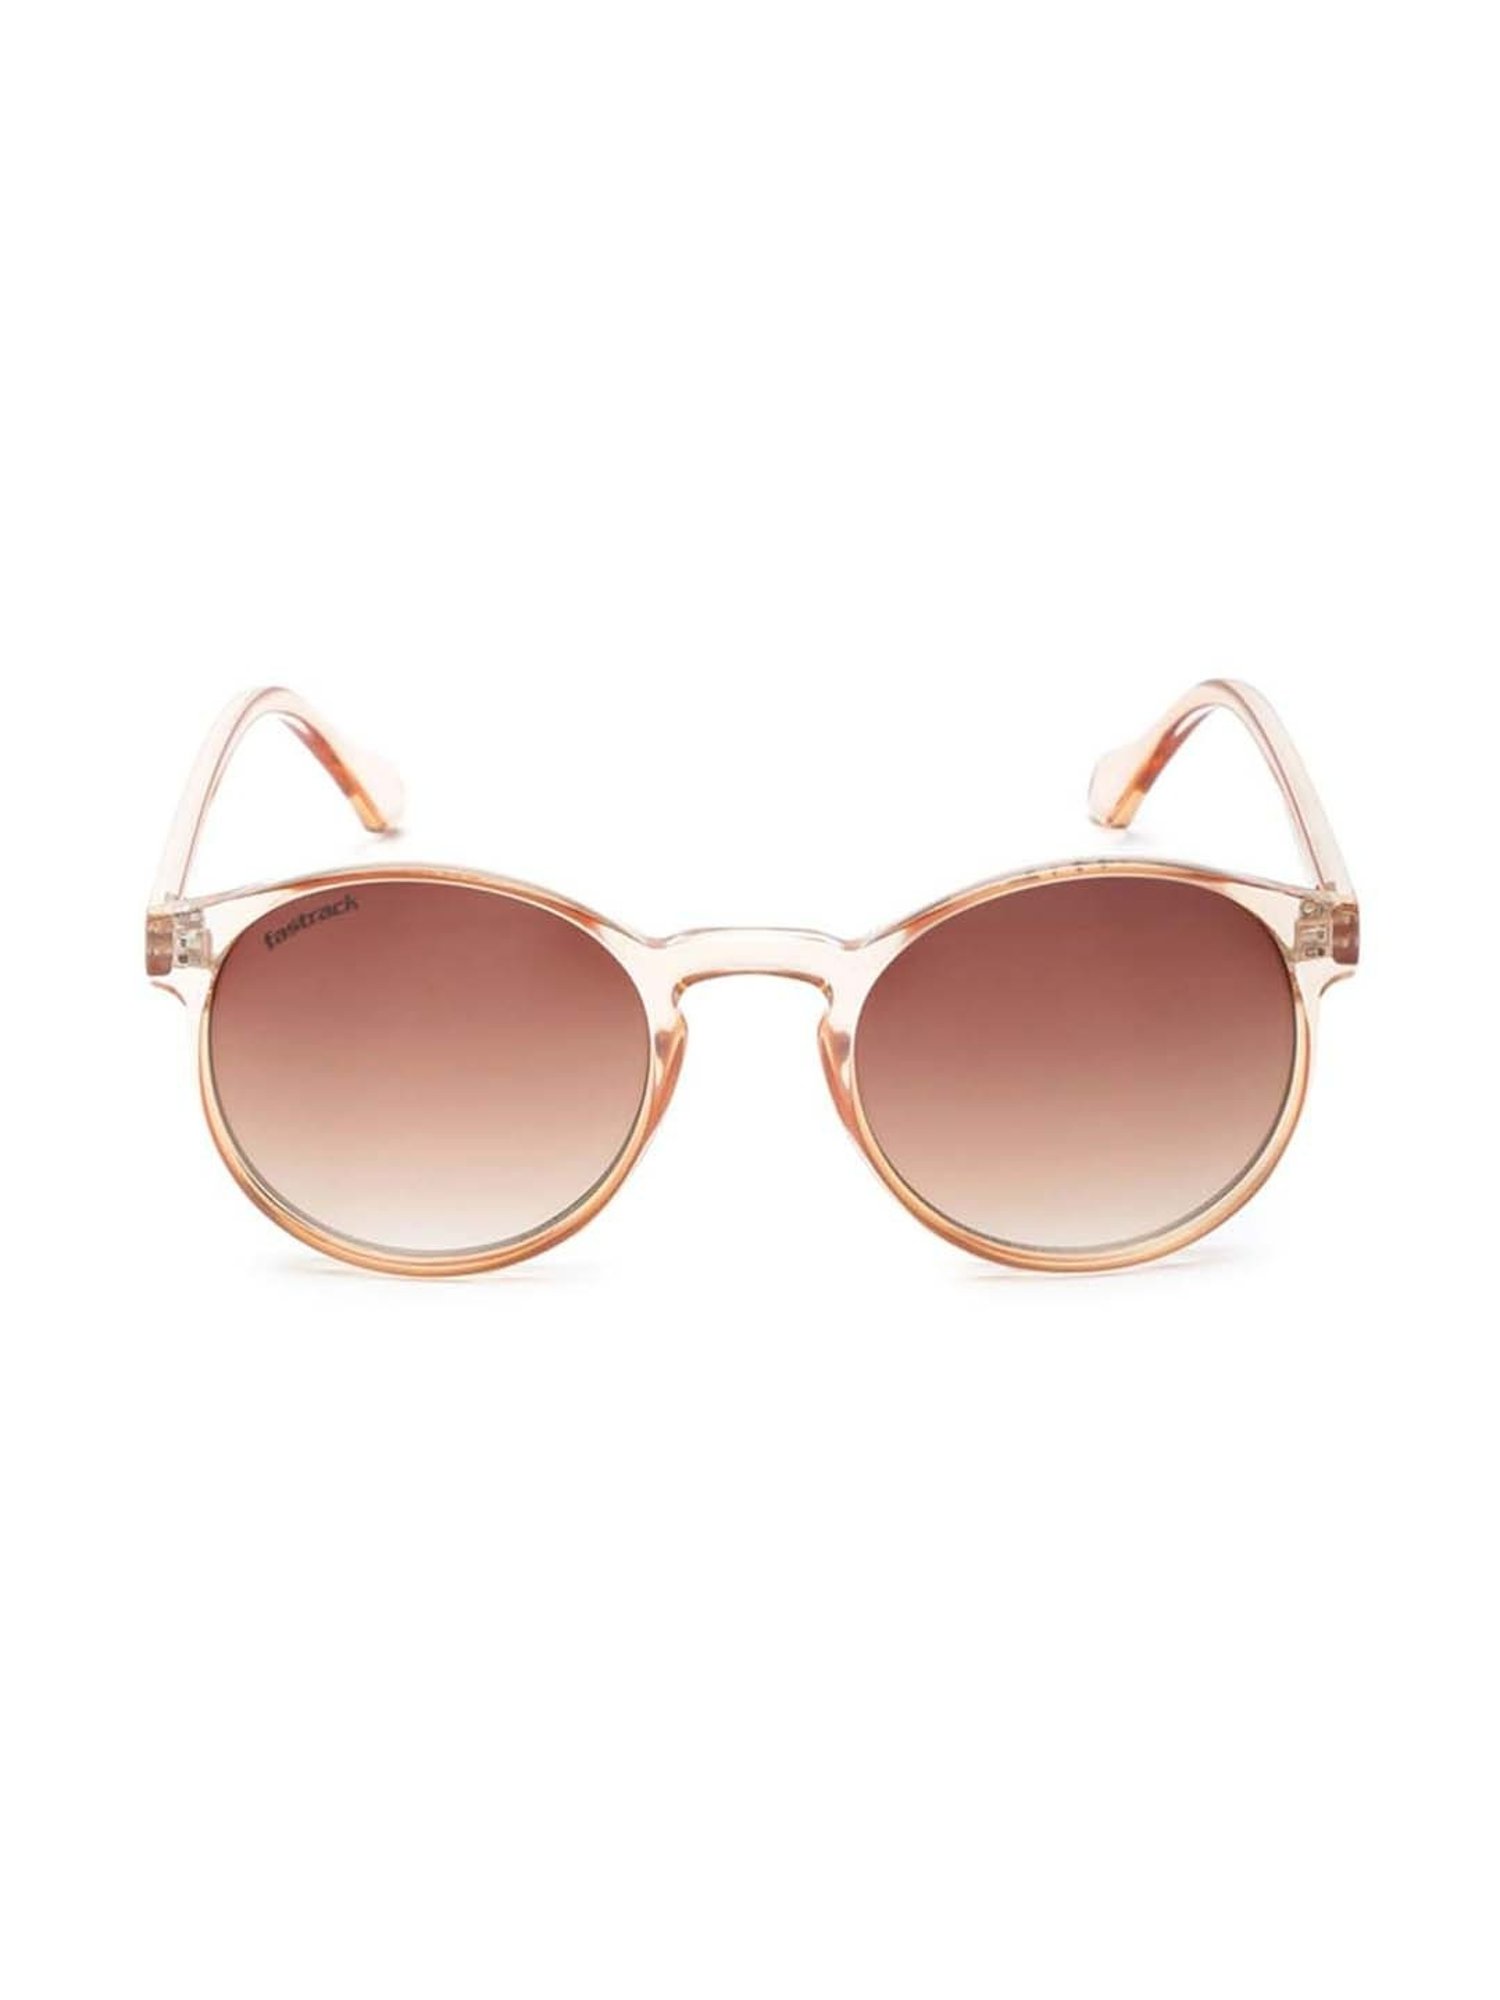 Round sunglasses - Gold - Ladies | H&M IN